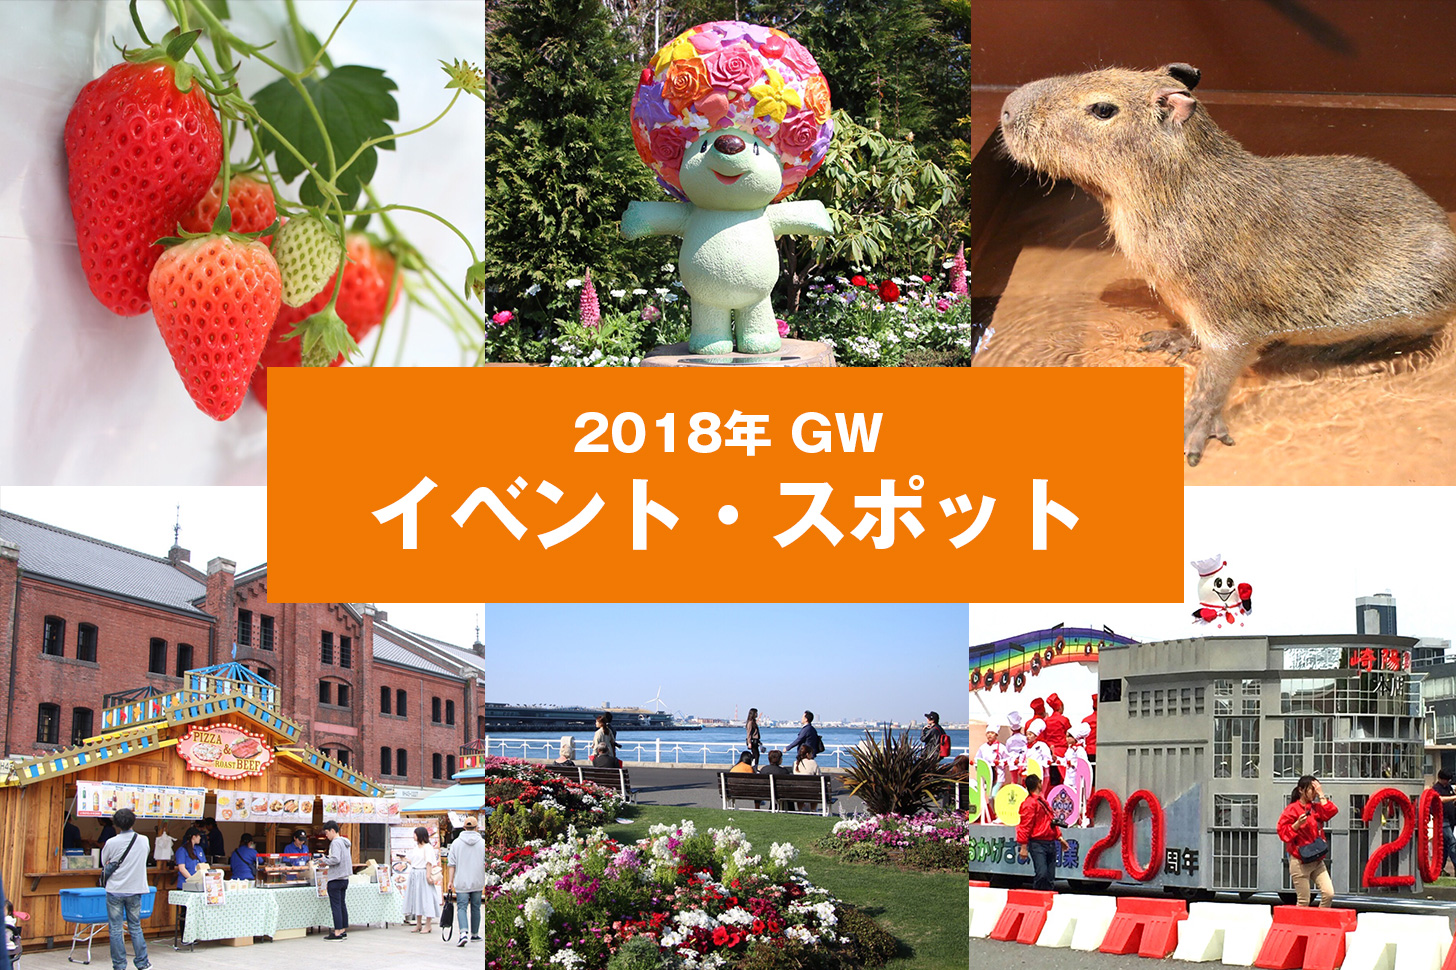 2018年 GW 横浜観光で行きたいイベント・話題の最新スポットまとめ